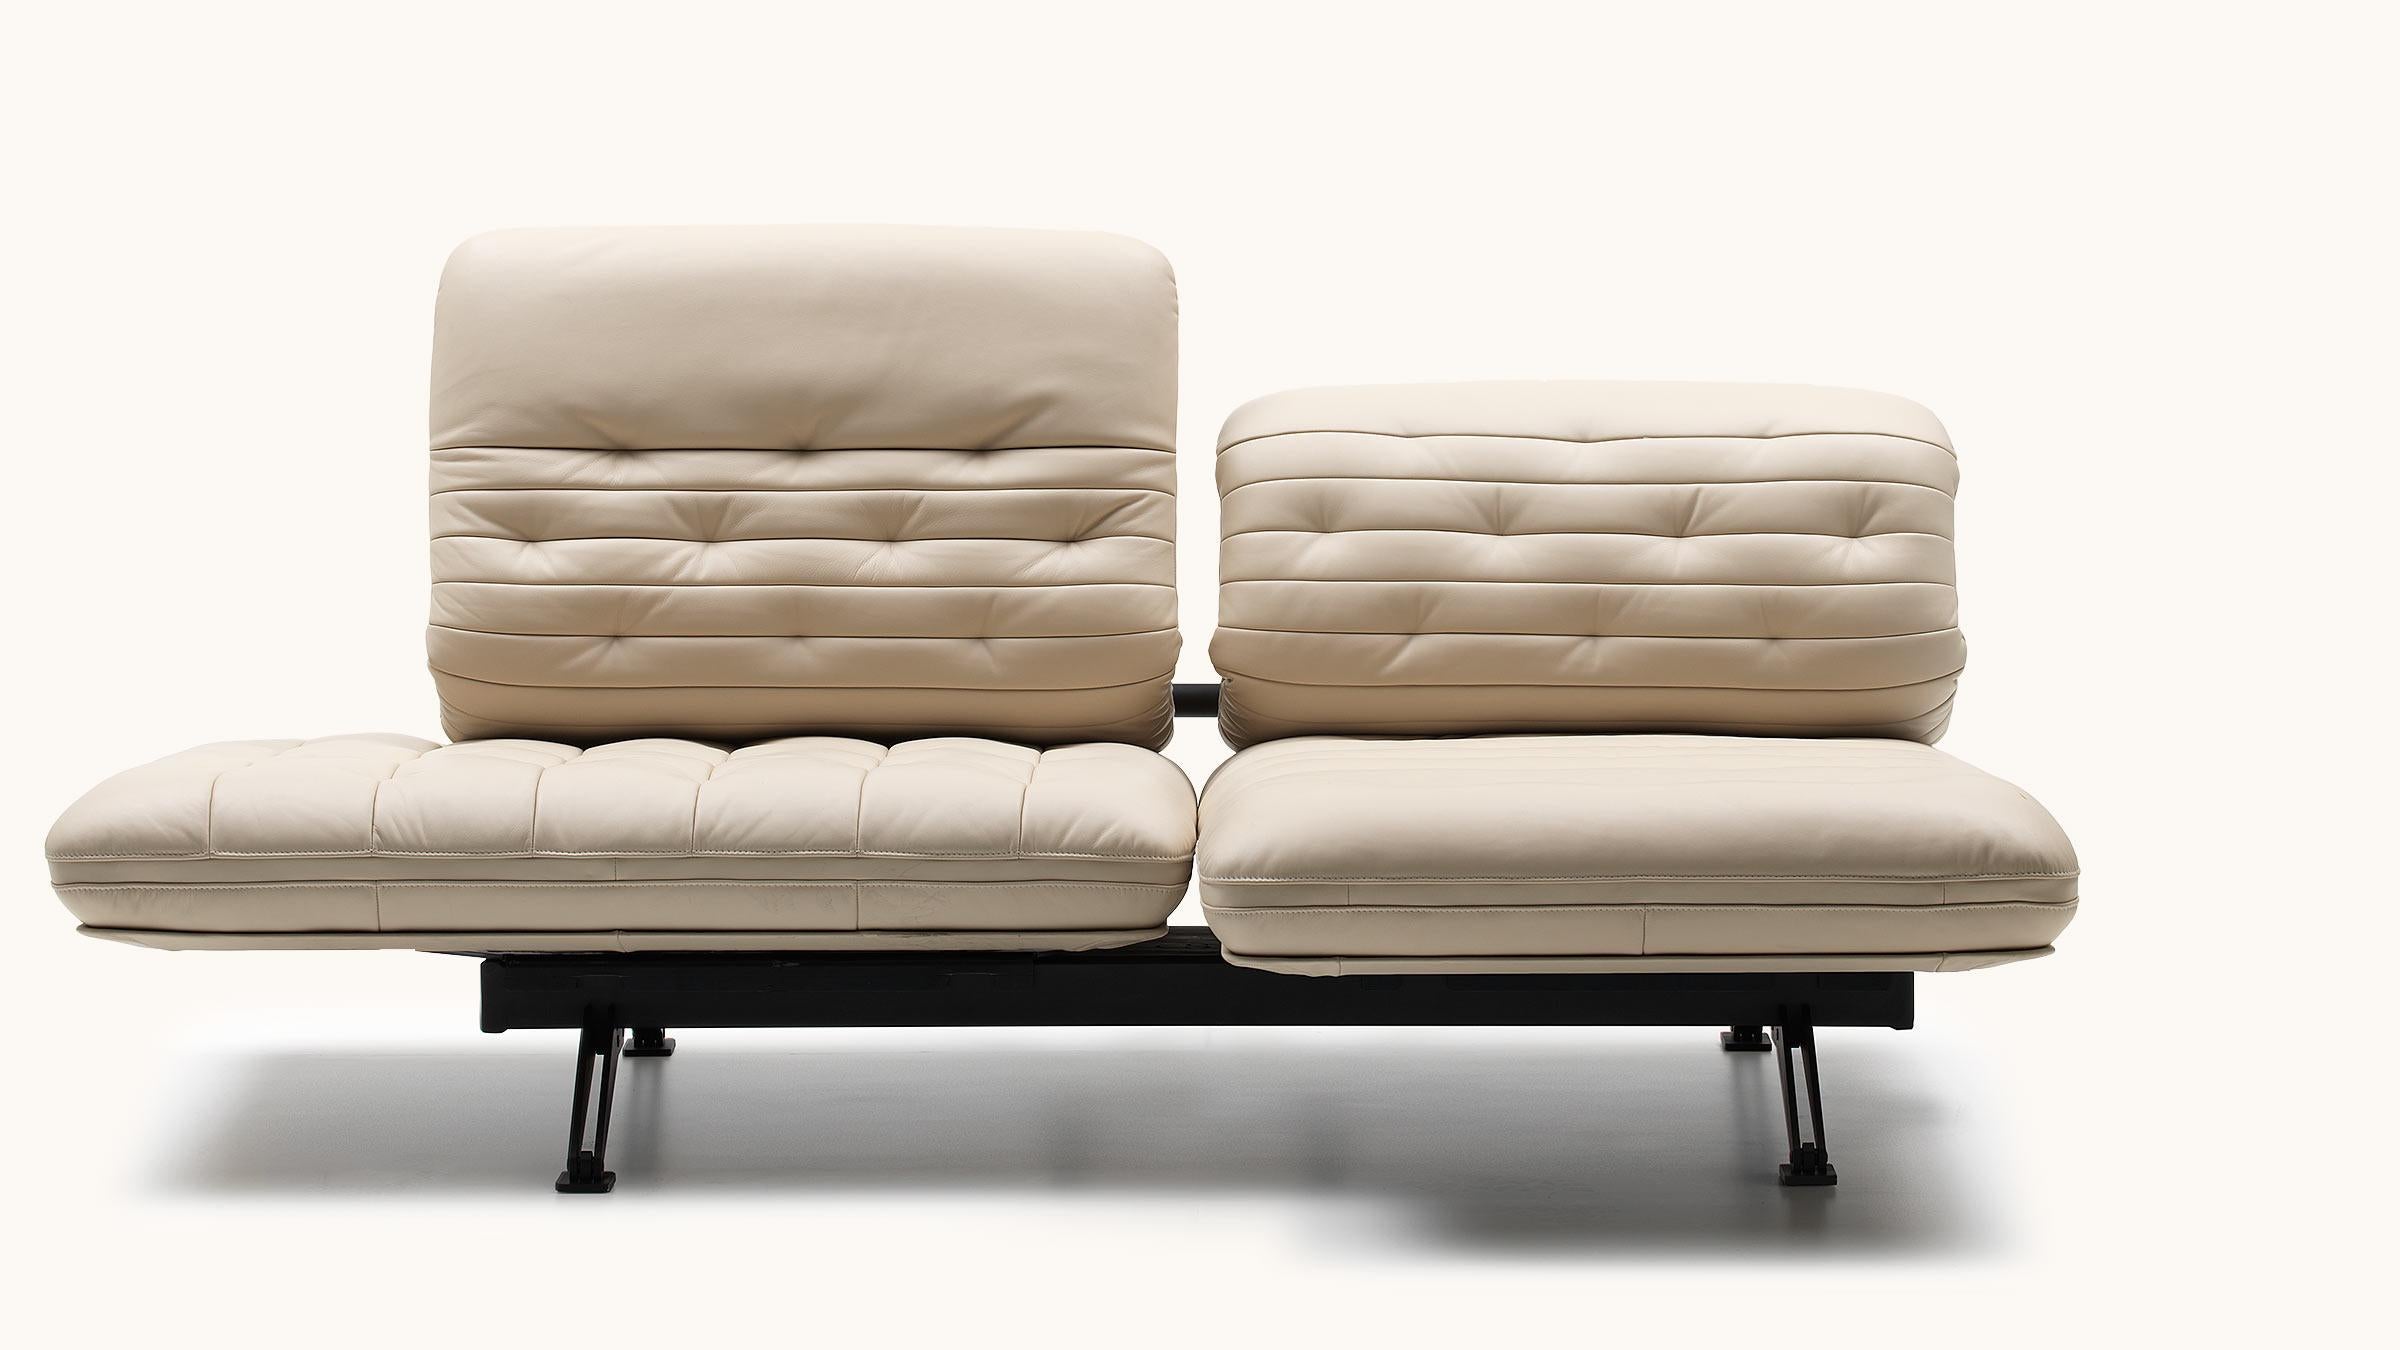 En deux coups de poignet, le DS-490 peut se transformer en un double fauteuil inclinable. Les éléments de l'assise, dont le rembourrage est finement piqué, offrent un confort souple et créent un contraste avec la forme précise de l'assise et le